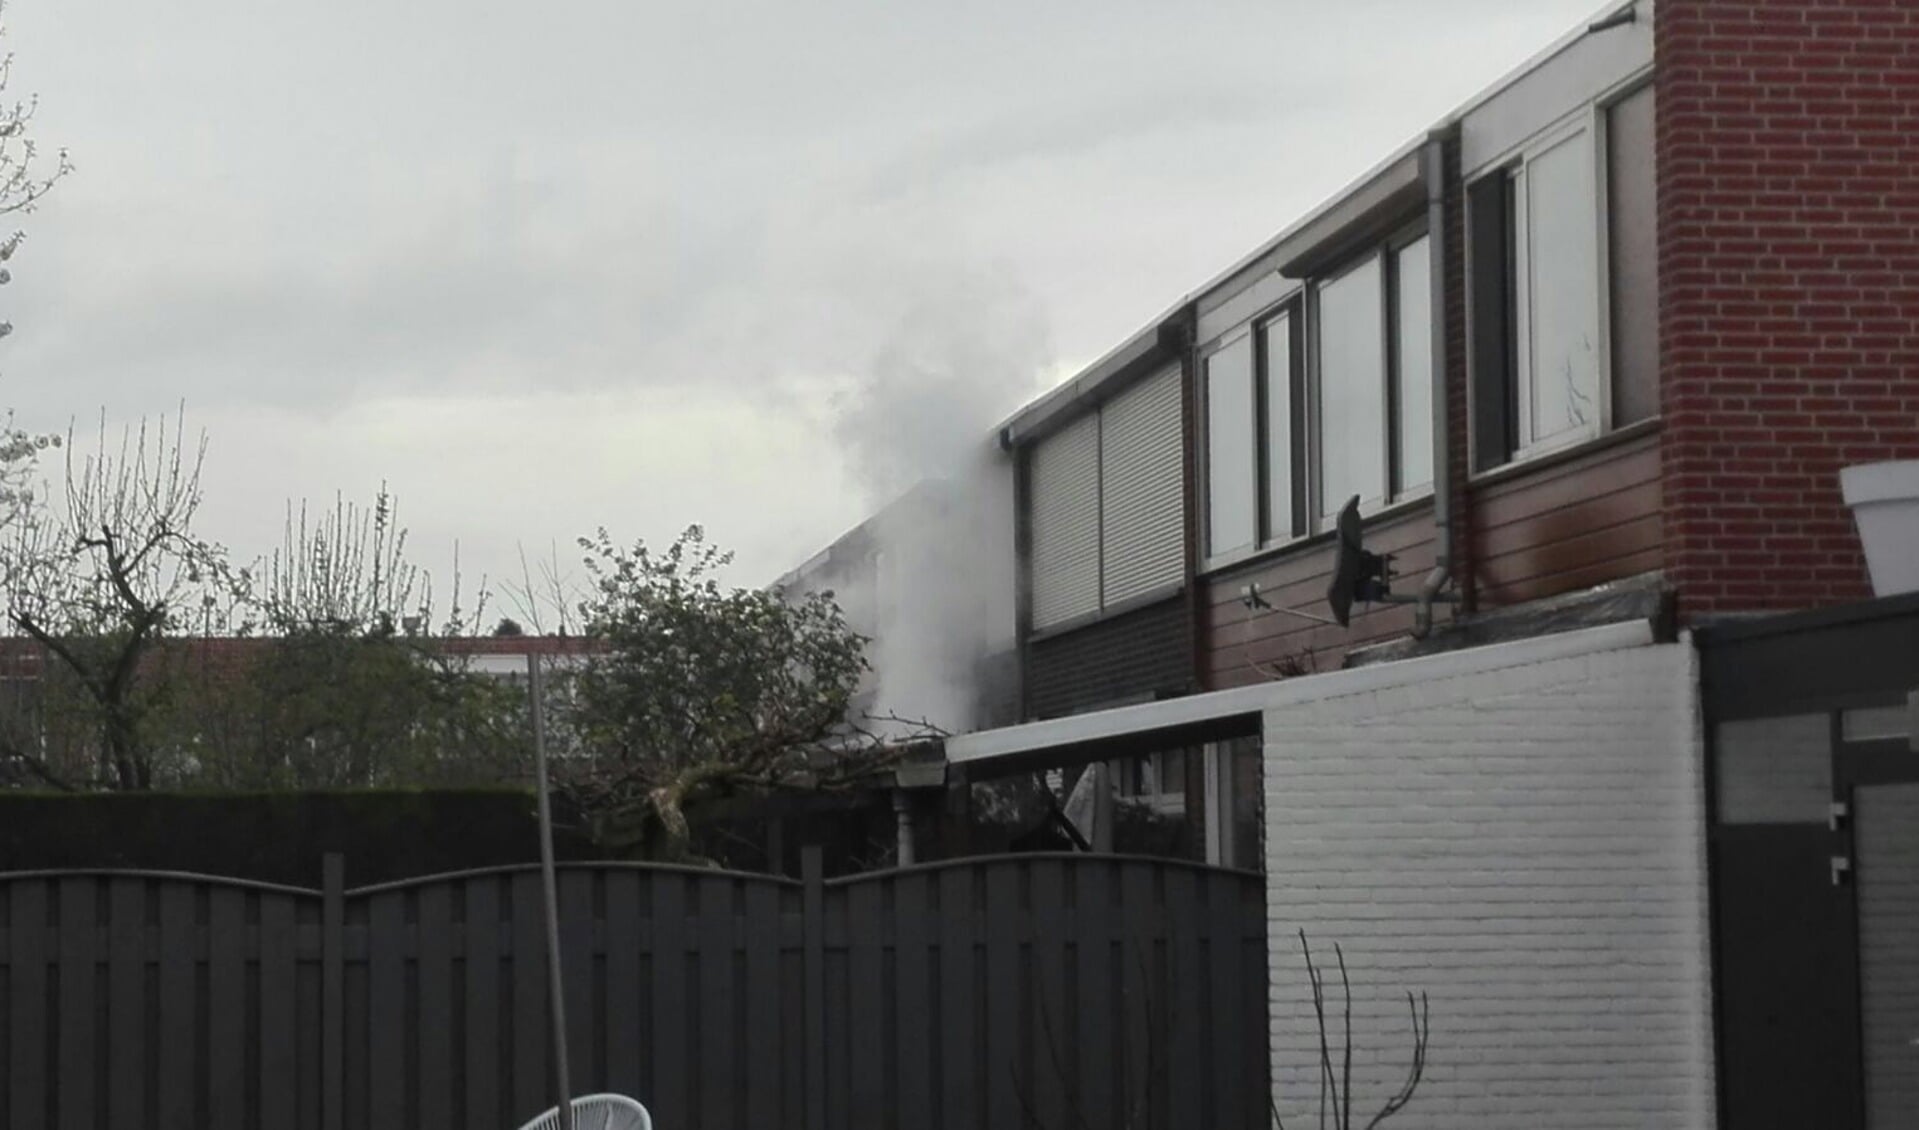 Woningbrand aan de Cornelis Ketelstraat in Boxmeer. (foto: SK-Media)